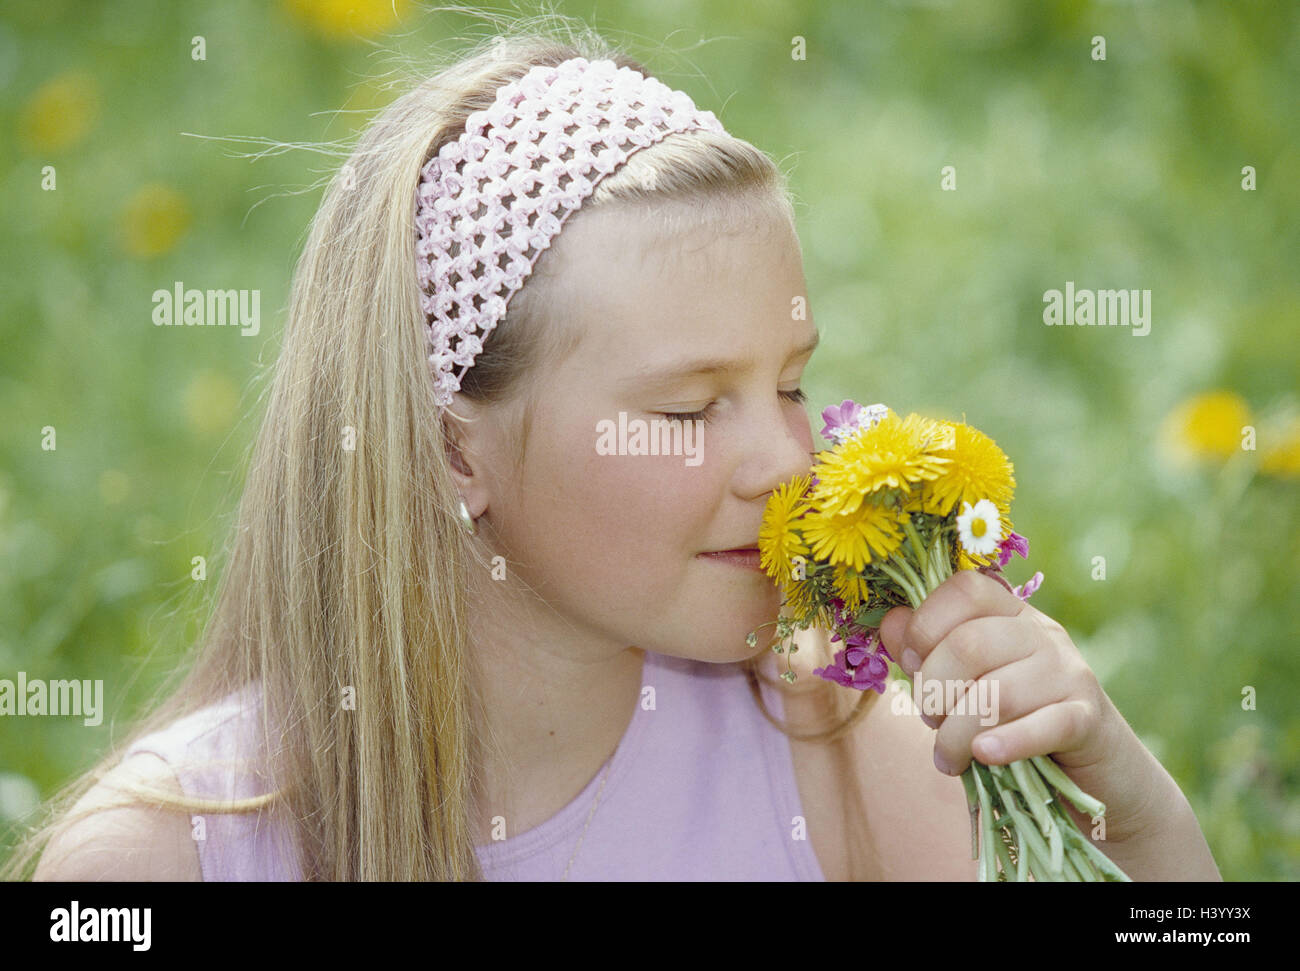 Wiese, Mädchen, Strauß, Geruch, Porträt, 10-13 Jahre, Kind, Blond, Augen geschlossen, Kindheit, Blumenwiese, Frühlingsblumen, Wiese Blumen, Blumen, Geruch, Geruch, genießen Sie das Gefühl, Natürlichkeit, Natur, Natur Pflanze, Saison, Sommer Stockfoto